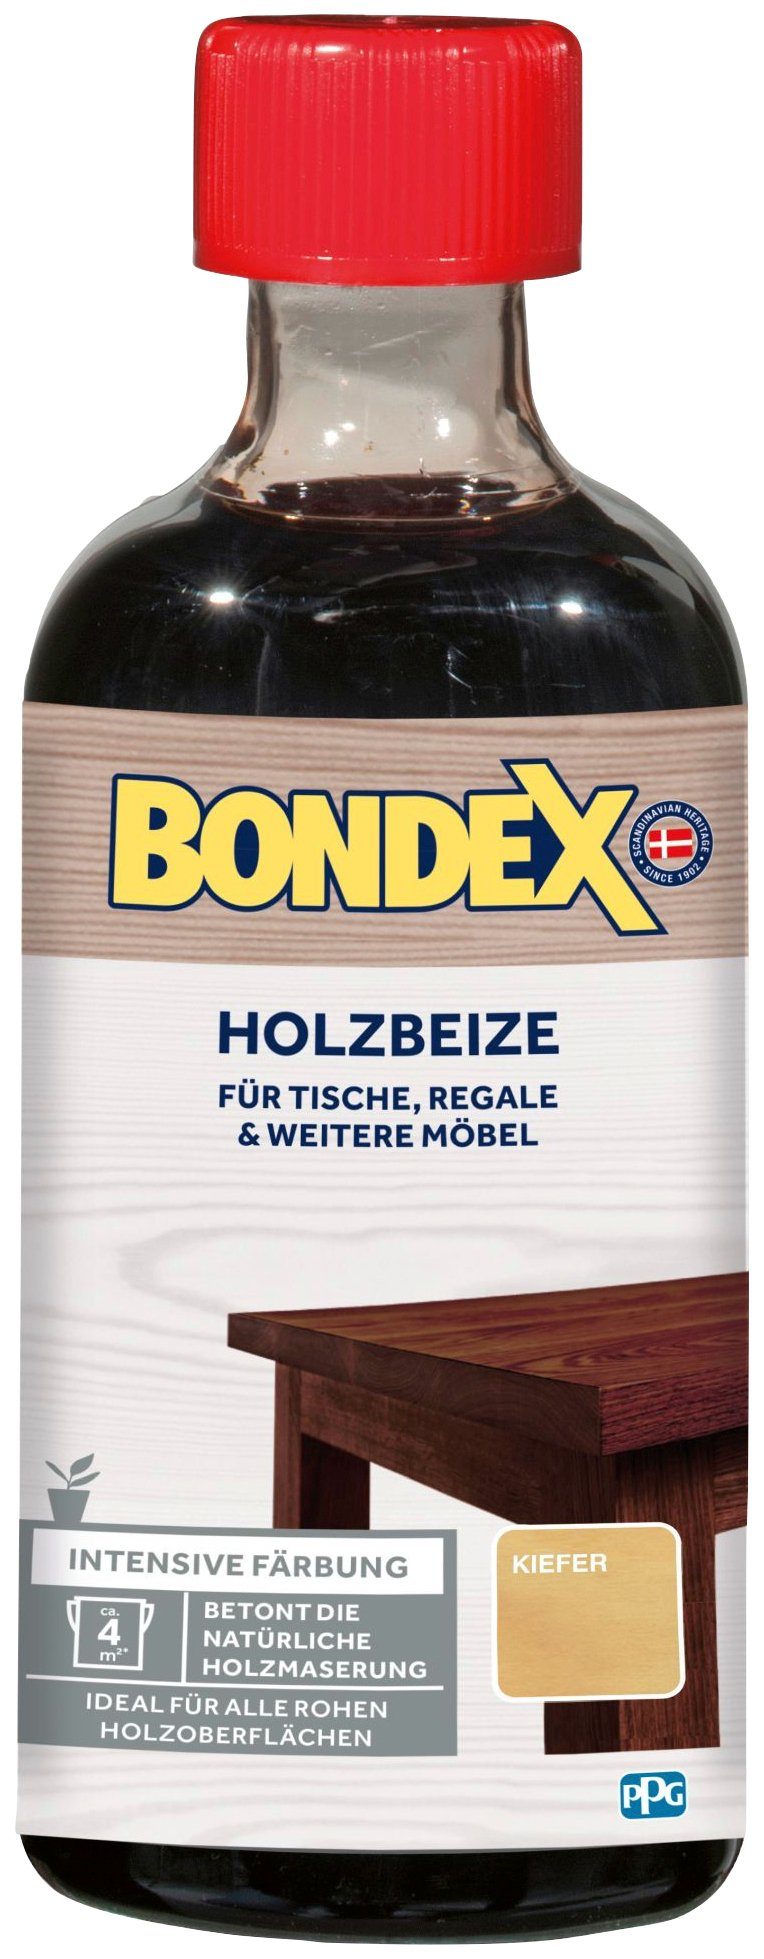 Bondex Lasur HOLZBEIZE, für Tische, Färbung, Kiefer intensive 0,25 l weitere & Möbel, Regale